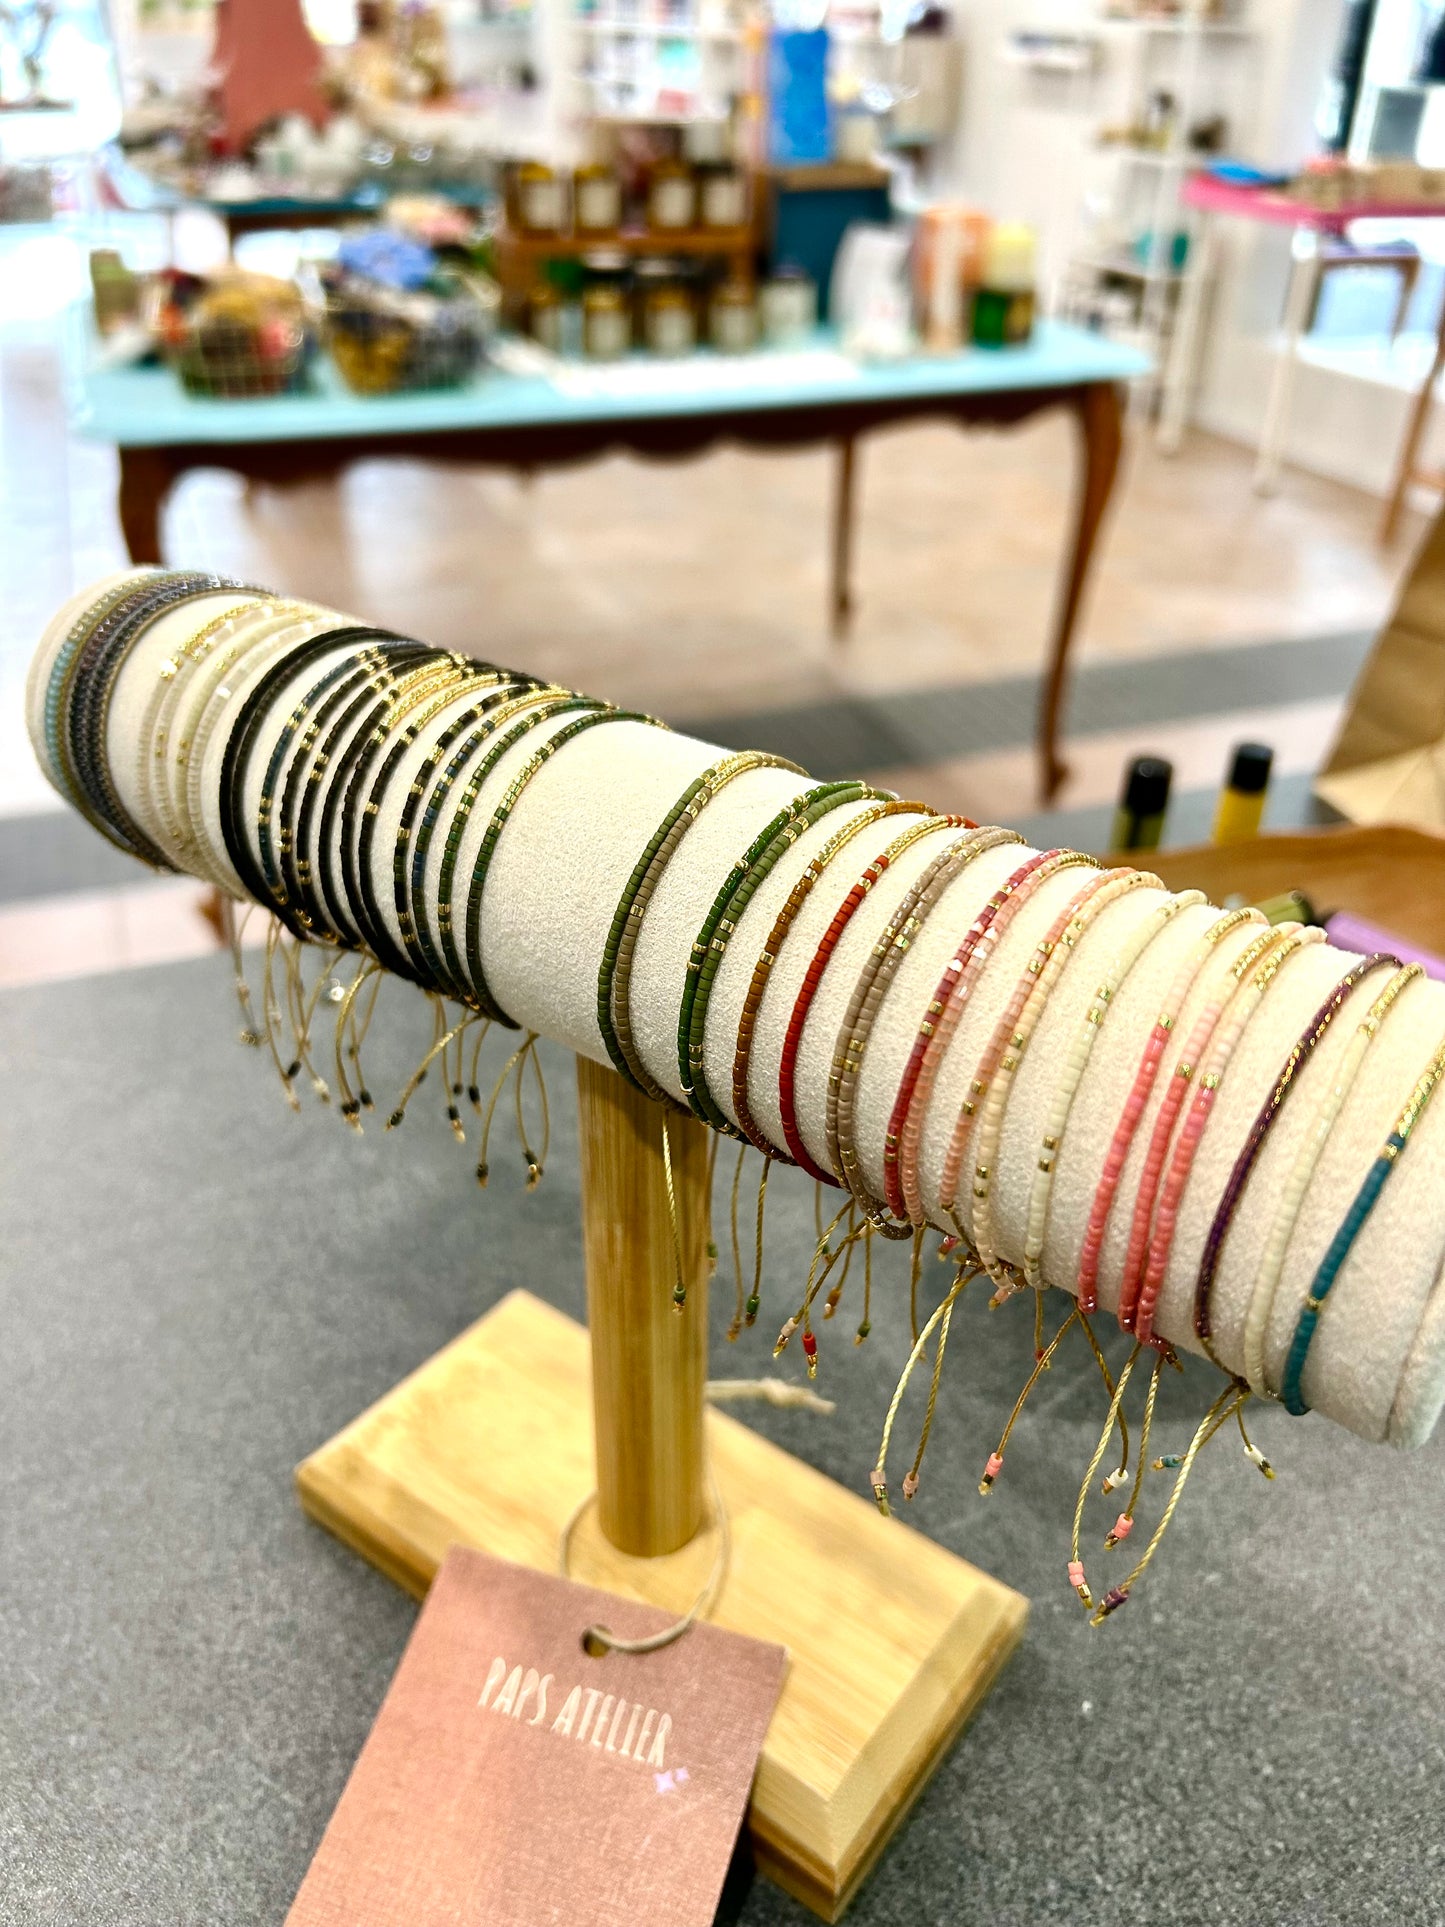 Petit bracelet de perles, couleurs variées, Paps atelier